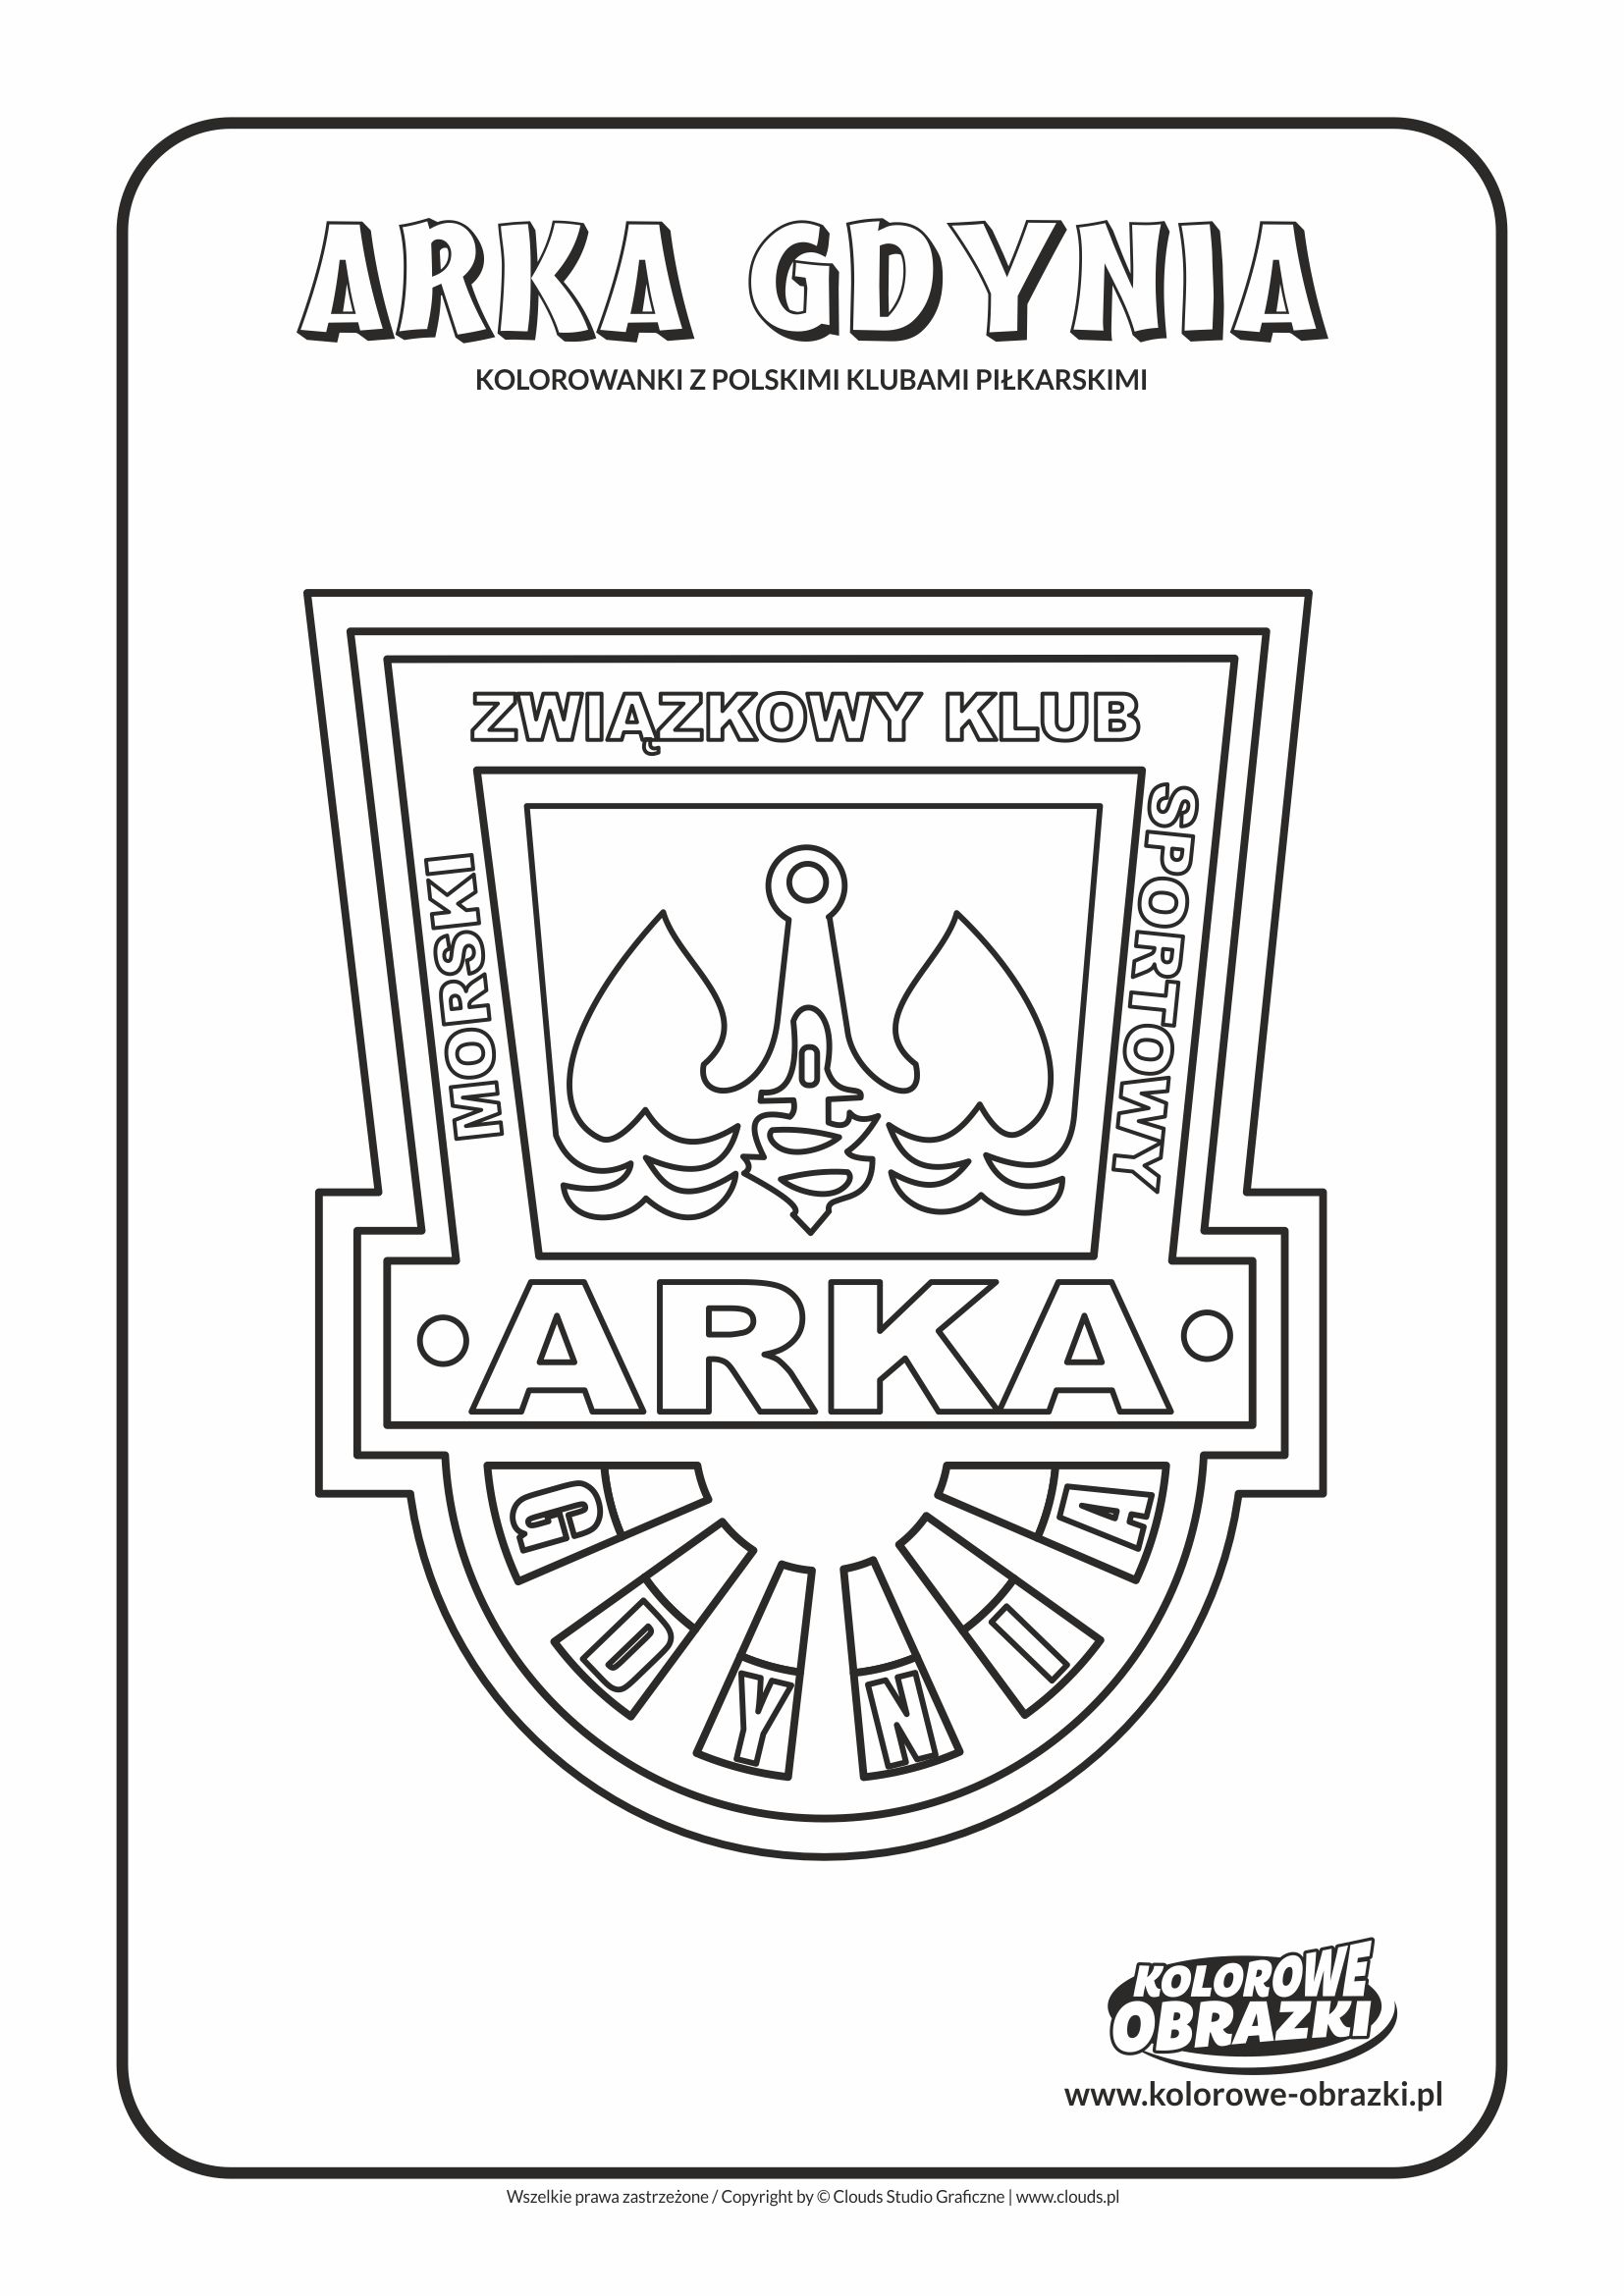 Kolorowanki dla dzieci - Polskie kluby piłkarskie / Arka Gdynia. Kolorowanka z polskimi klubami piłkarskimi